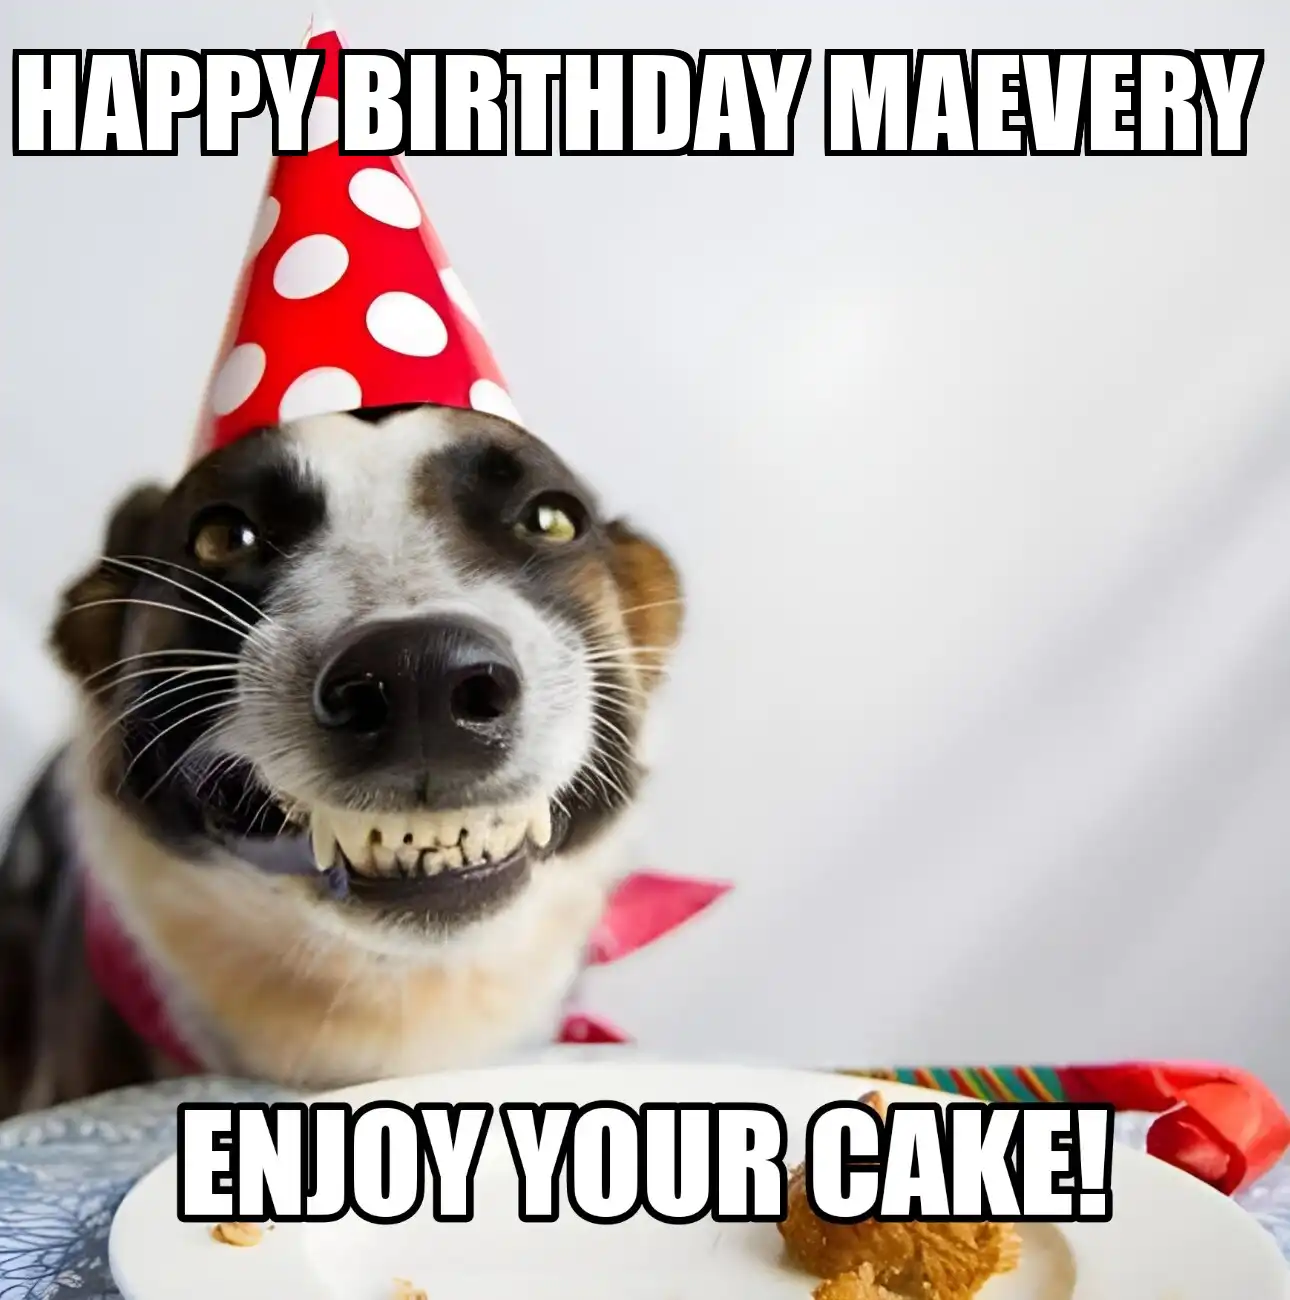 Happy Birthday Maevery Enjoy Your Cake Dog Meme